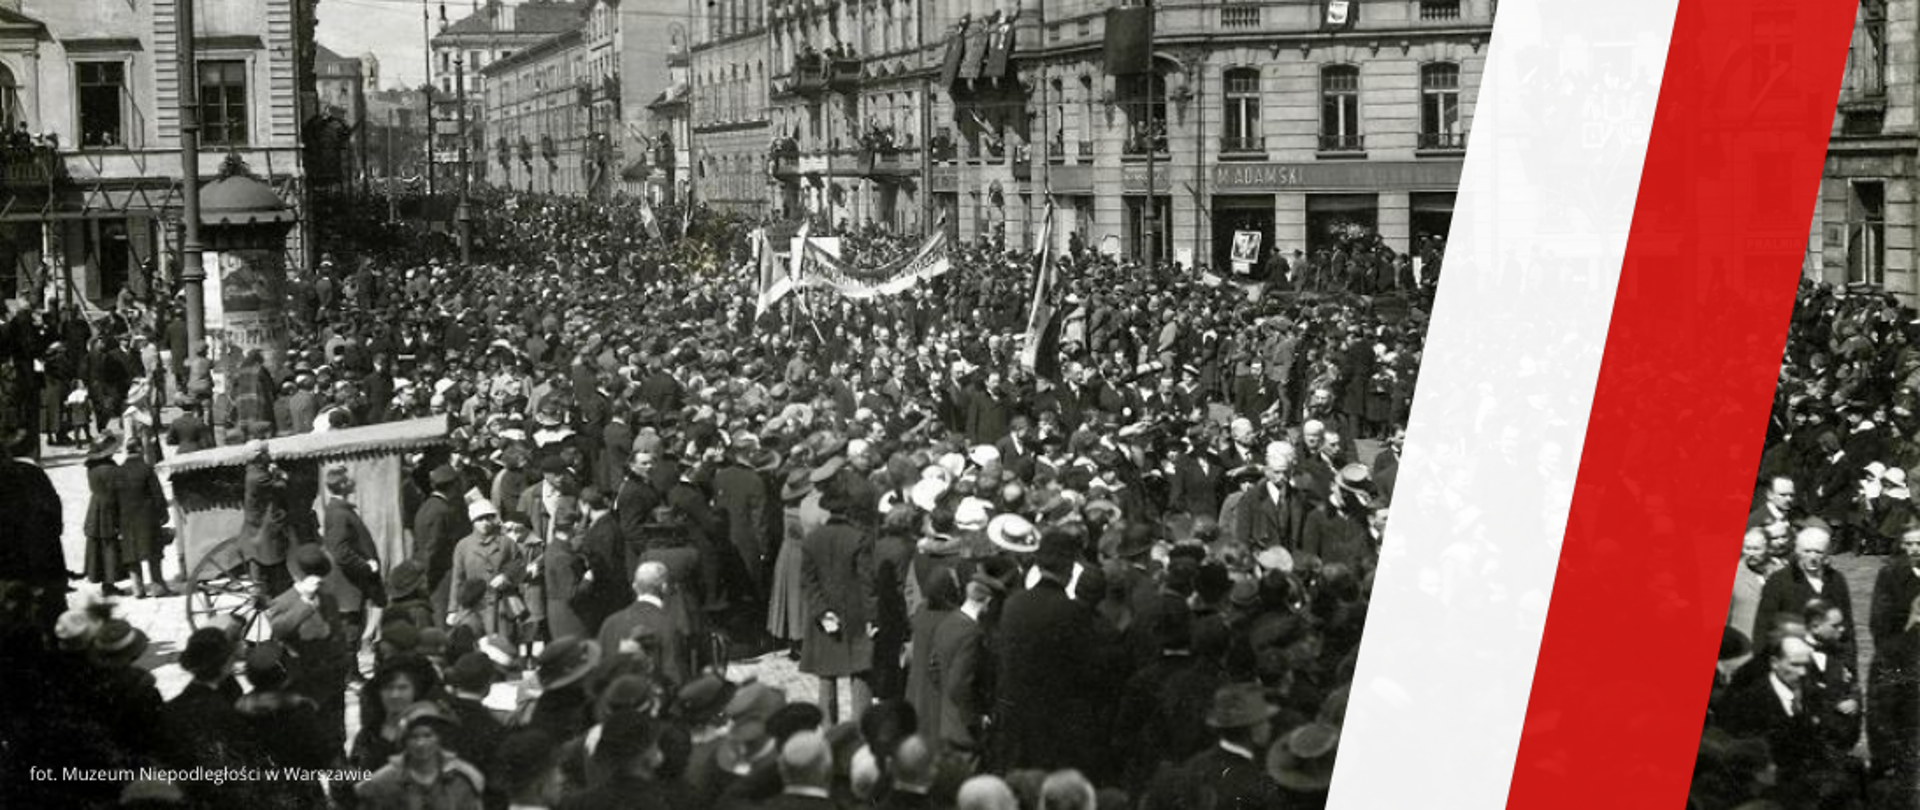 102 lata temu, 11 listopada 1918 r., Polska odzyskała niepodległość. 